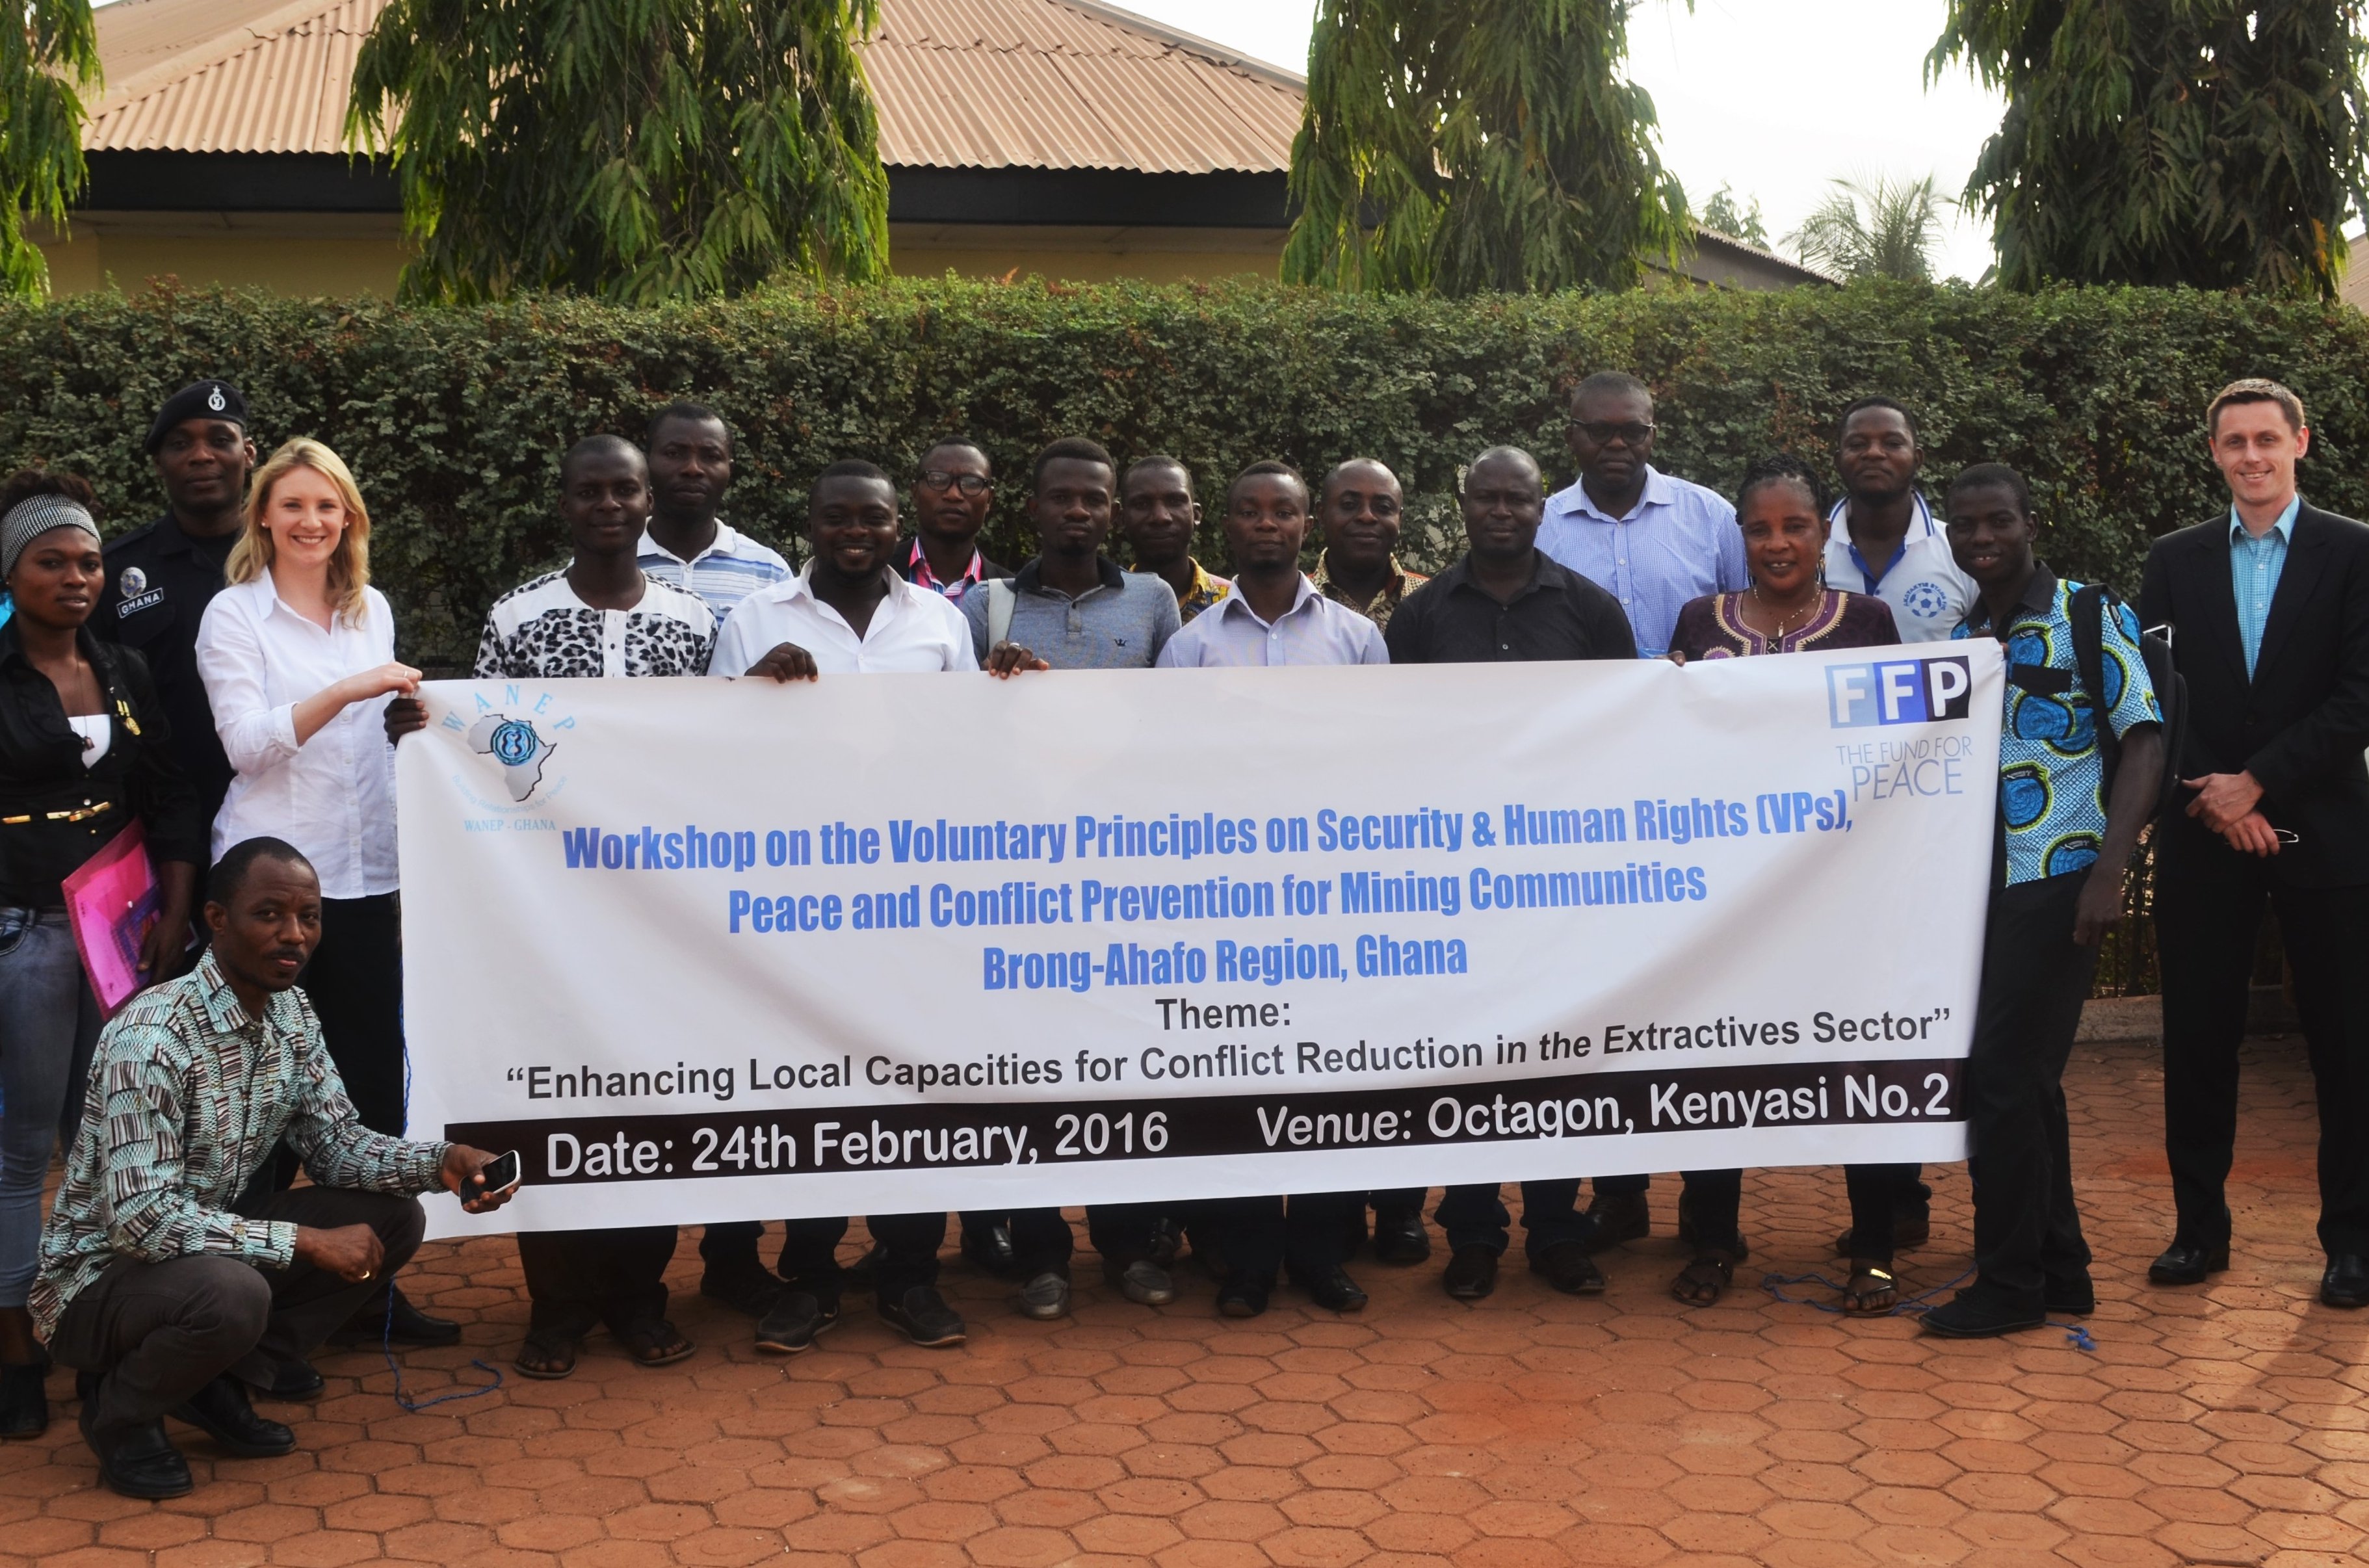 Participants at the Brong-Ahafo Regional Dialogue - February 24, 2016, Kenyasi